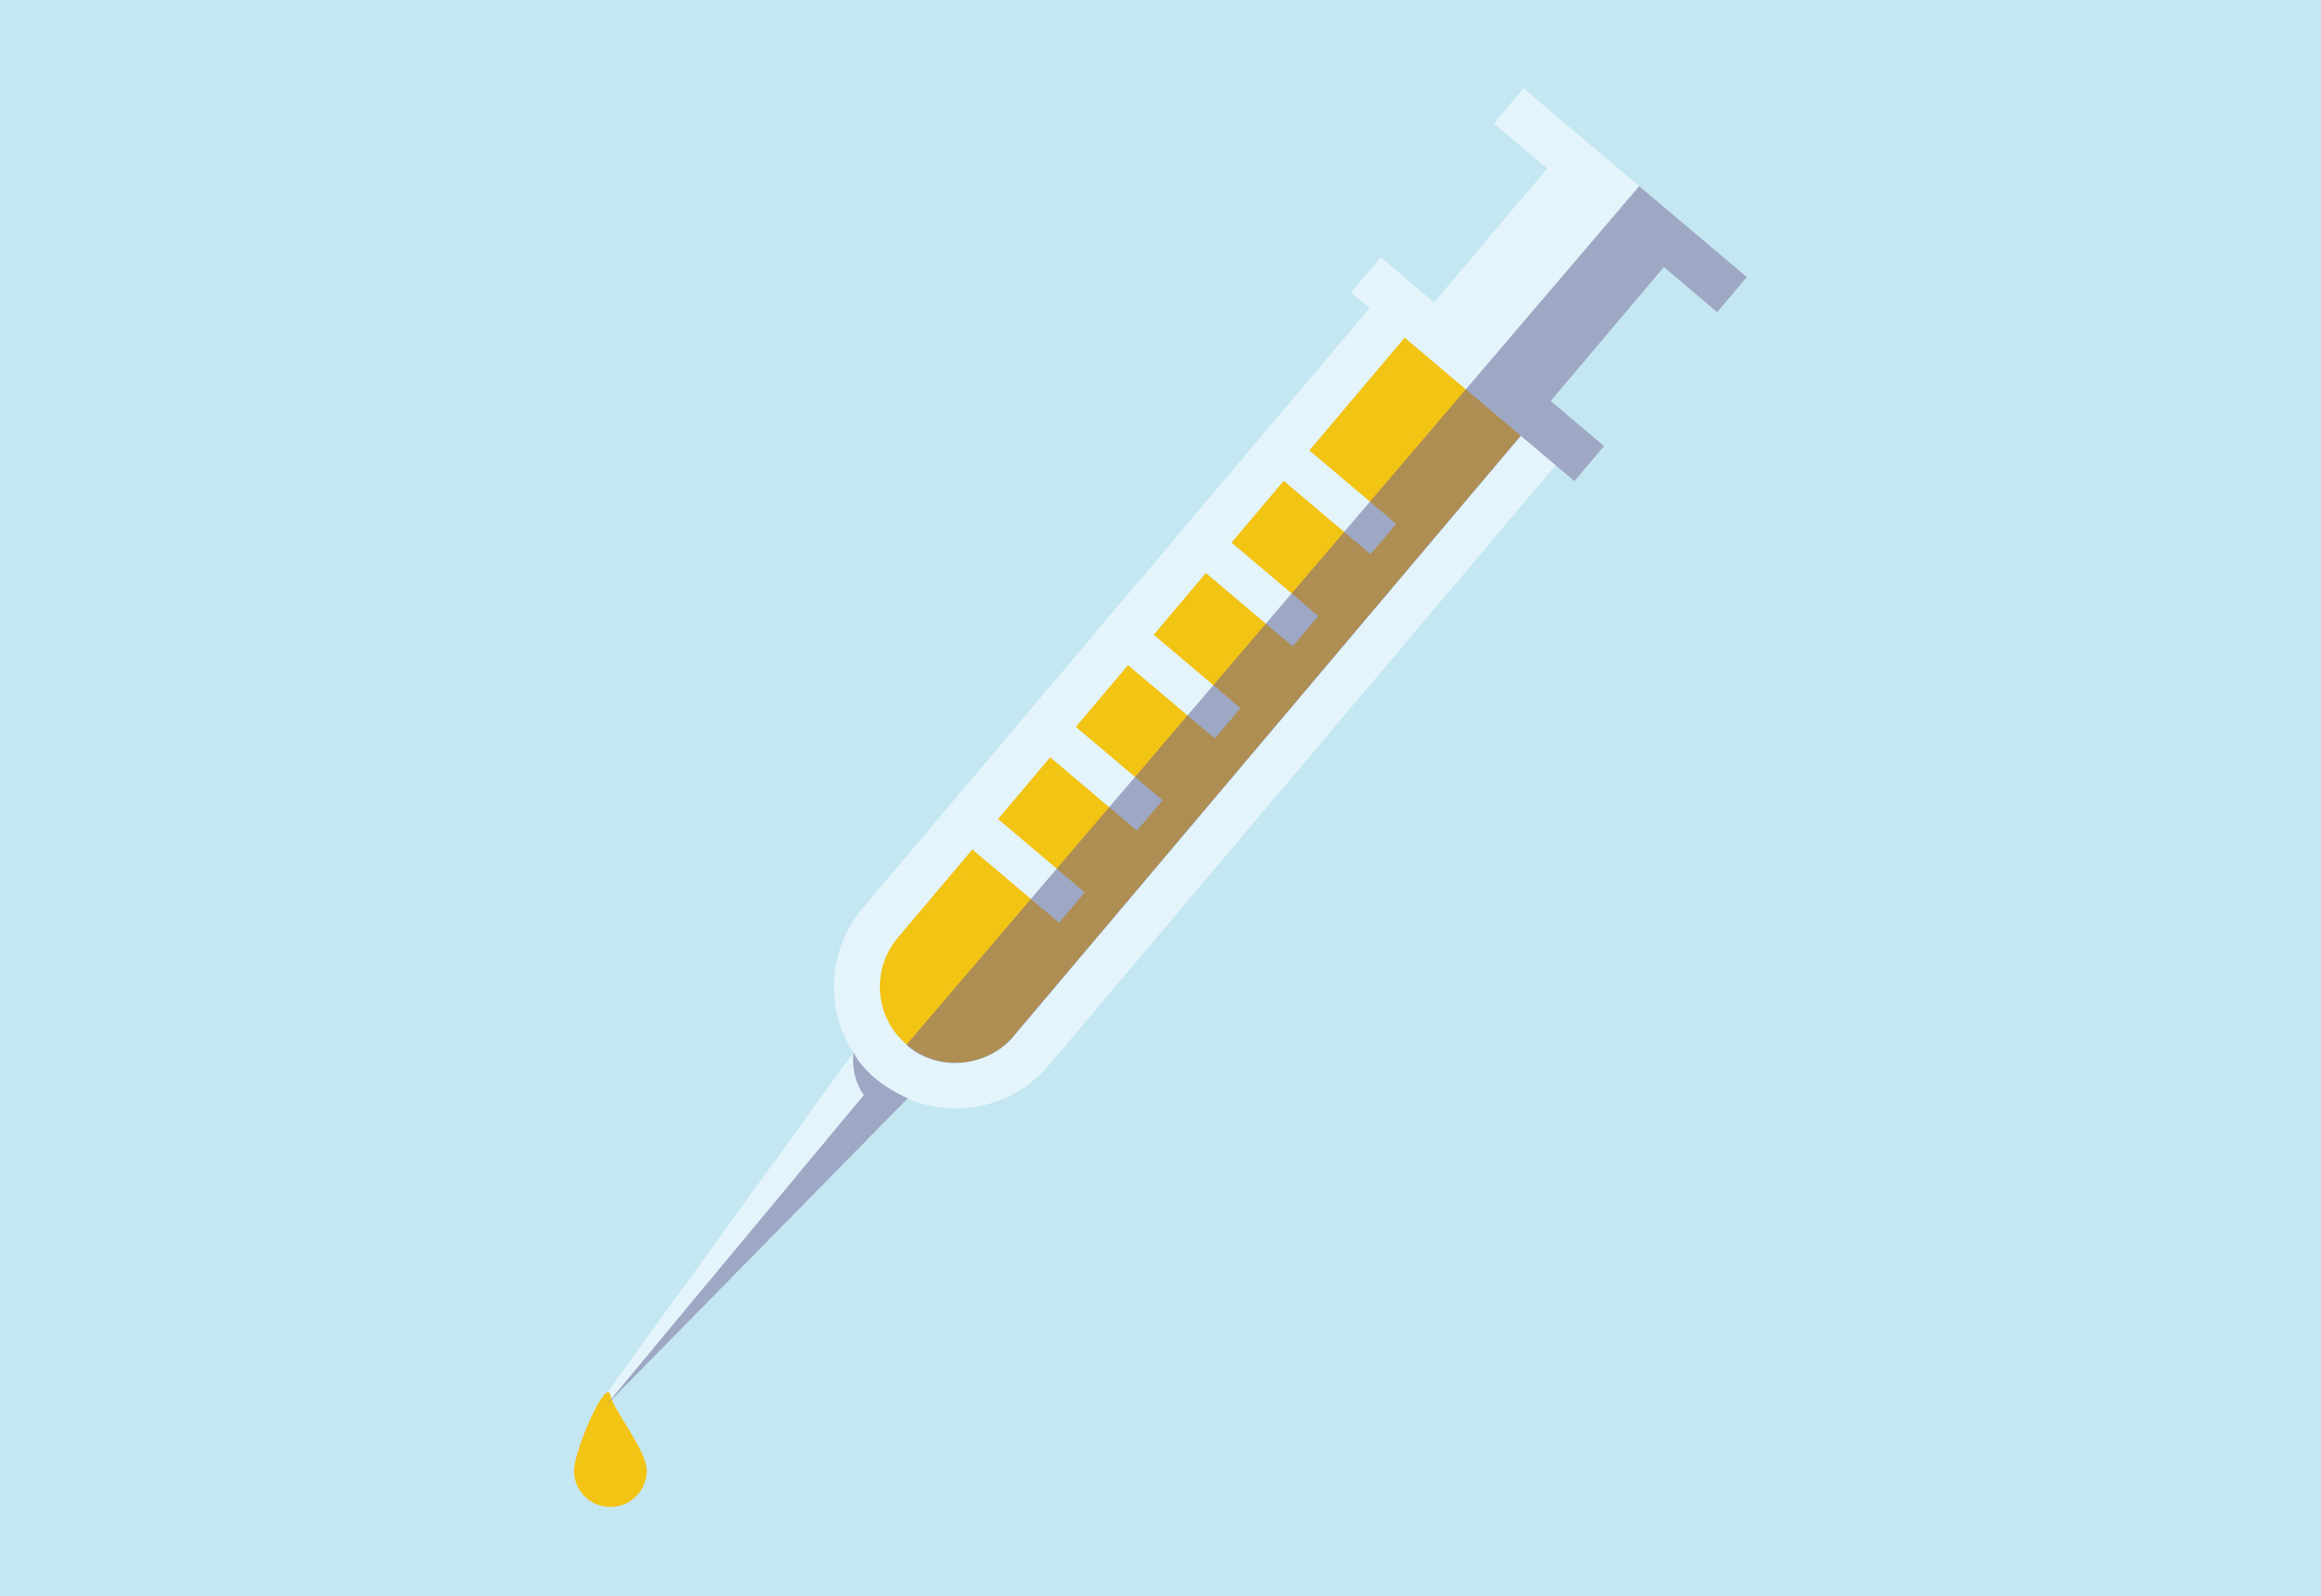 Icon of syringe illustrating flu shot